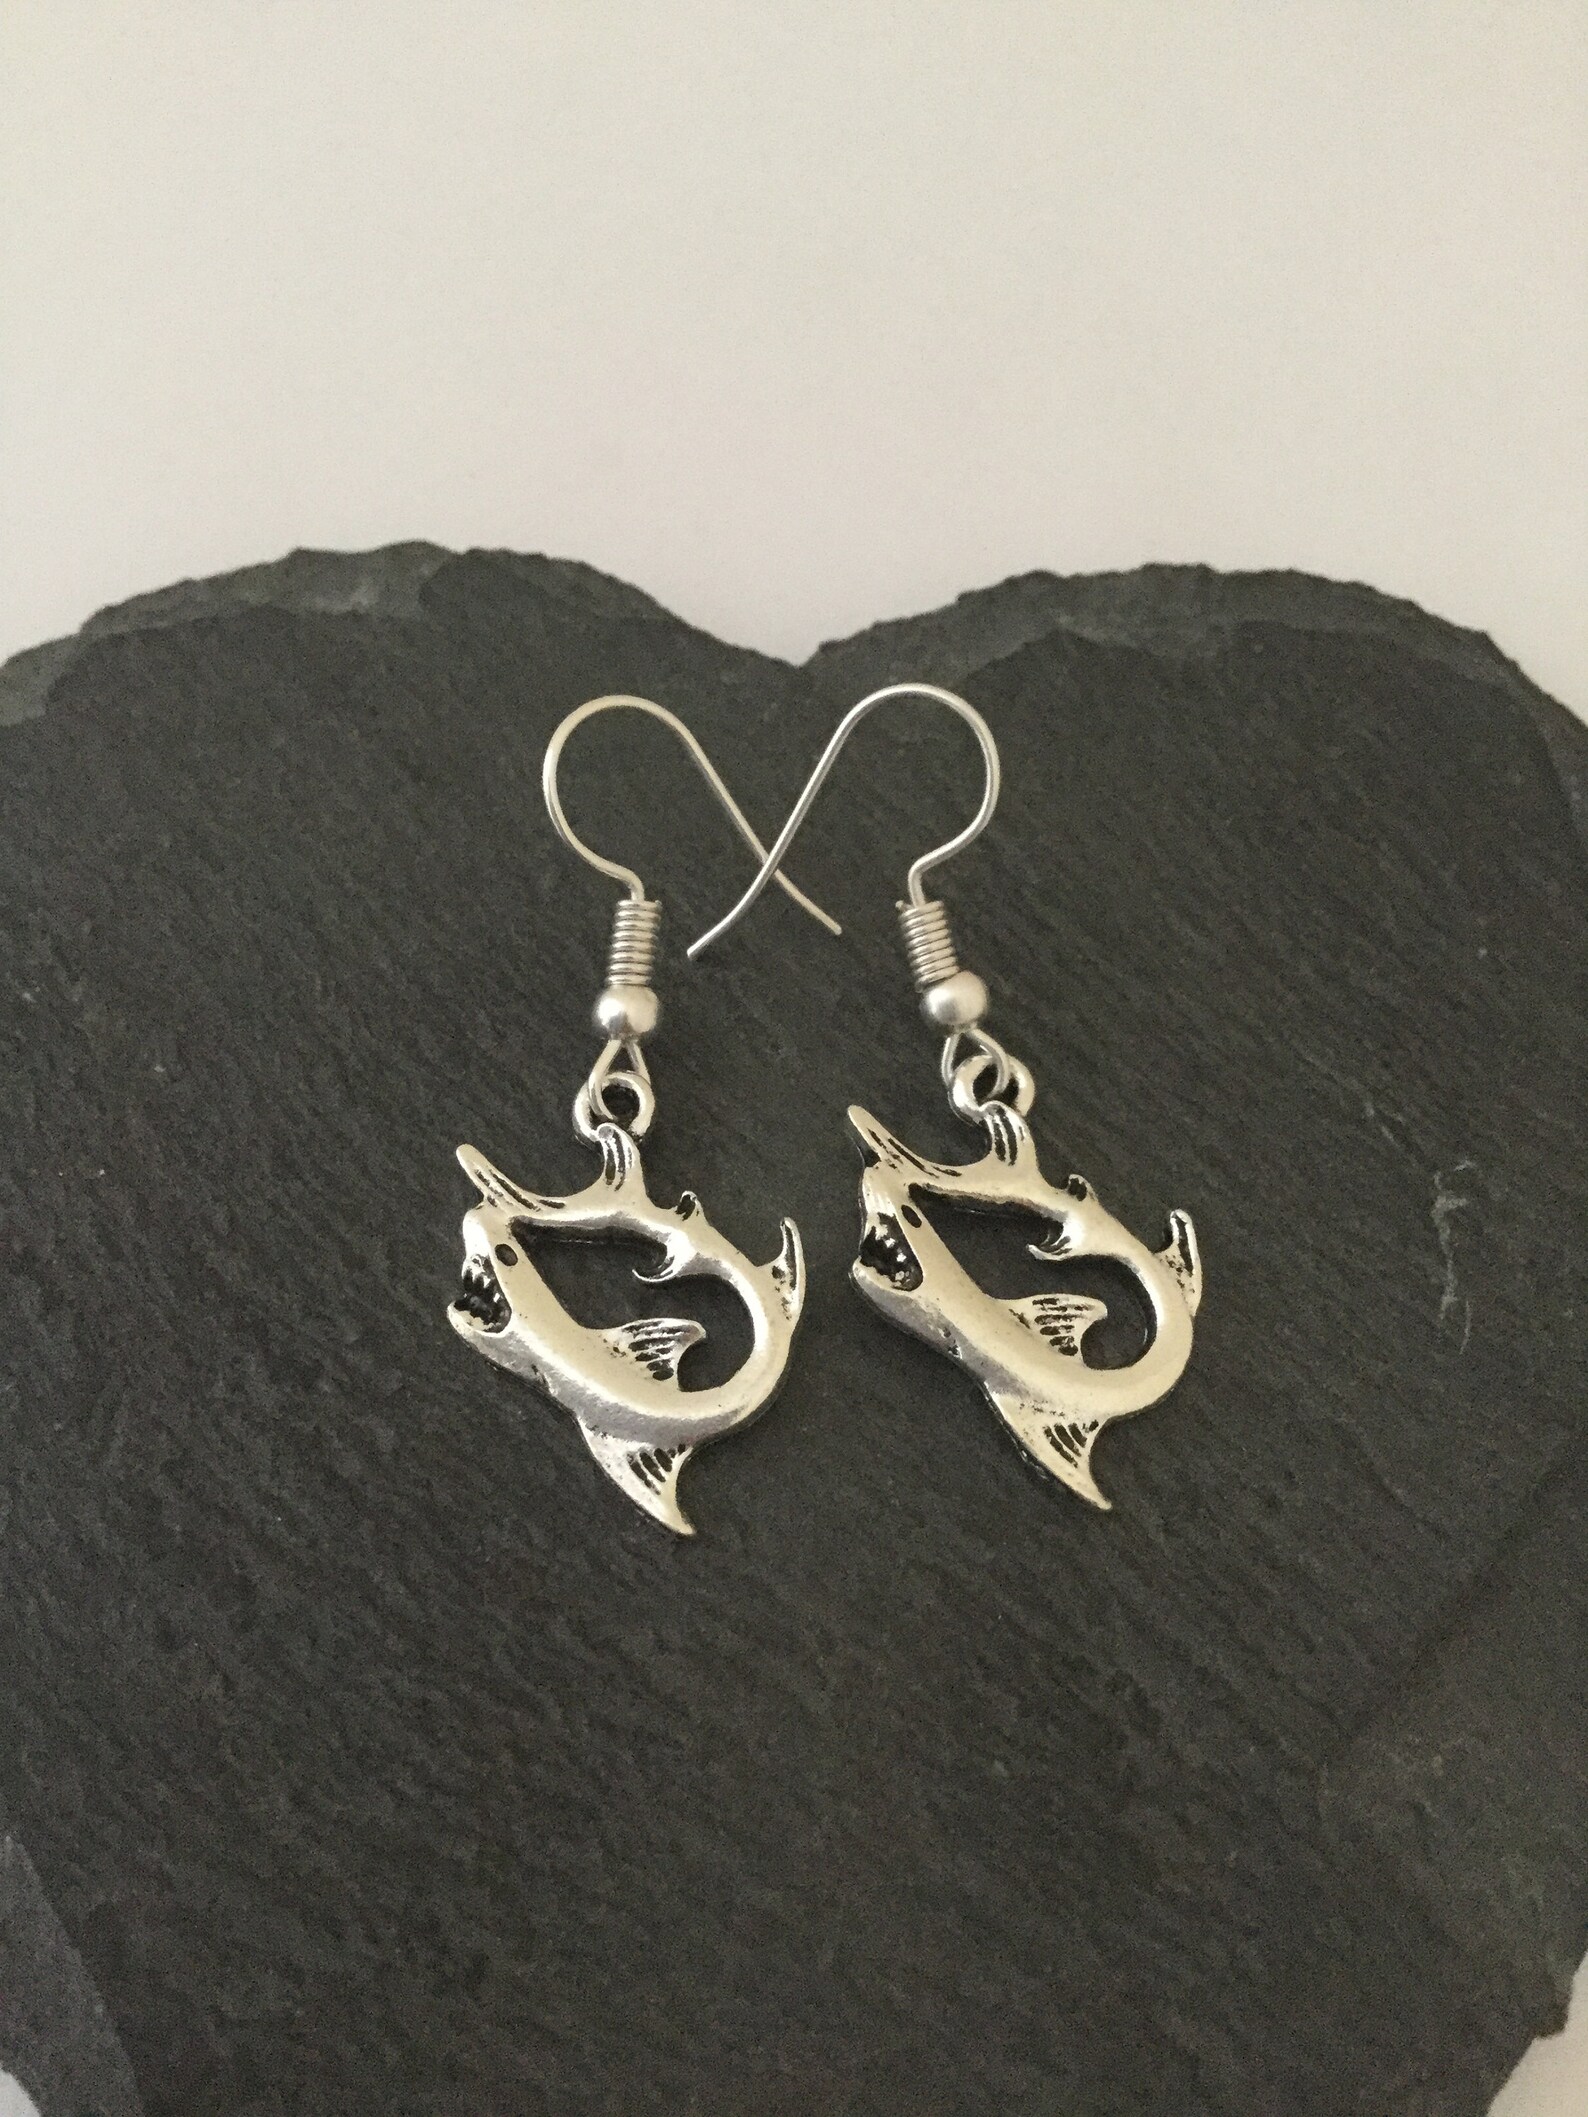 Shark Earrings / Shark Jewellery/ Shark Gift /sealife Earrings - Etsy UK